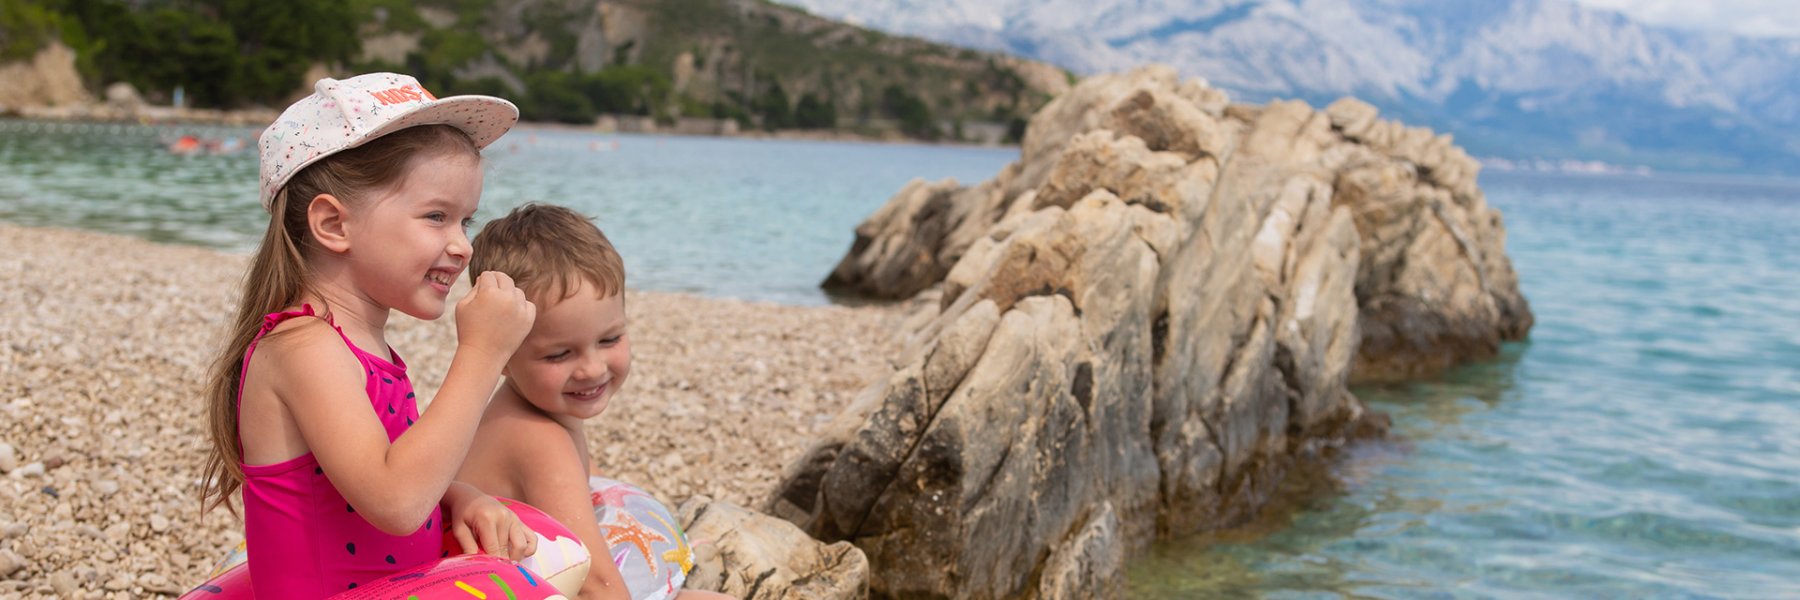 Ferienhaus mit Kindern in Kroatien